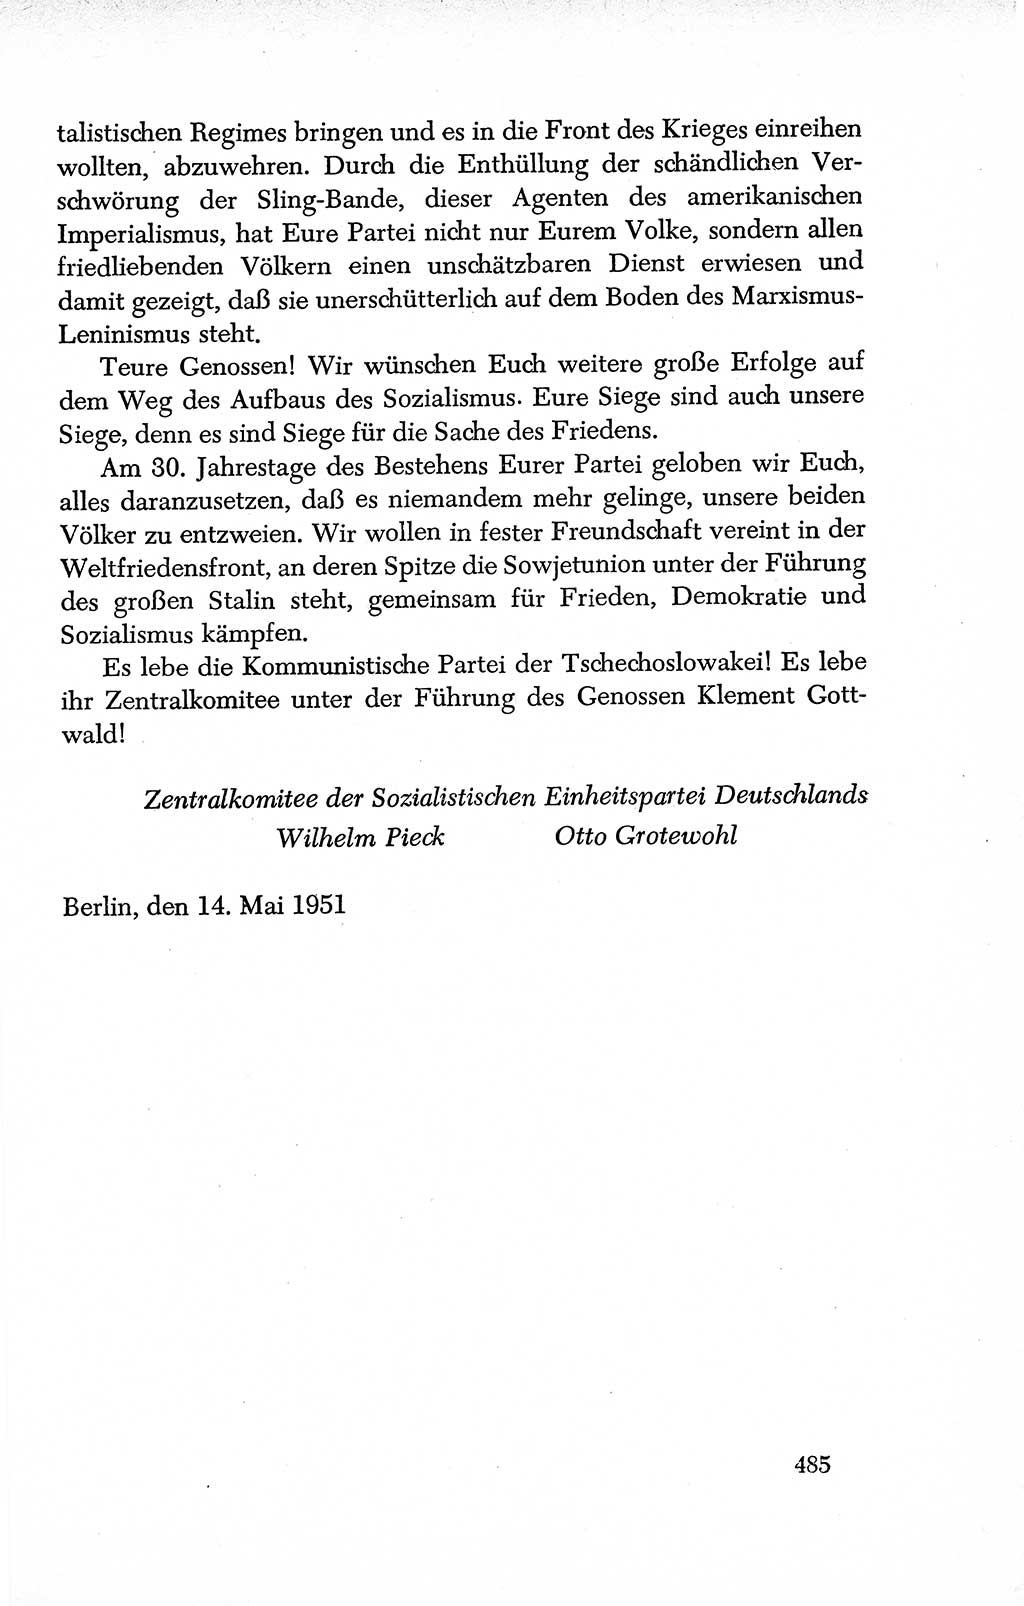 Dokumente der Sozialistischen Einheitspartei Deutschlands (SED) [Deutsche Demokratische Republik (DDR)] 1950-1952, Seite 485 (Dok. SED DDR 1950-1952, S. 485)